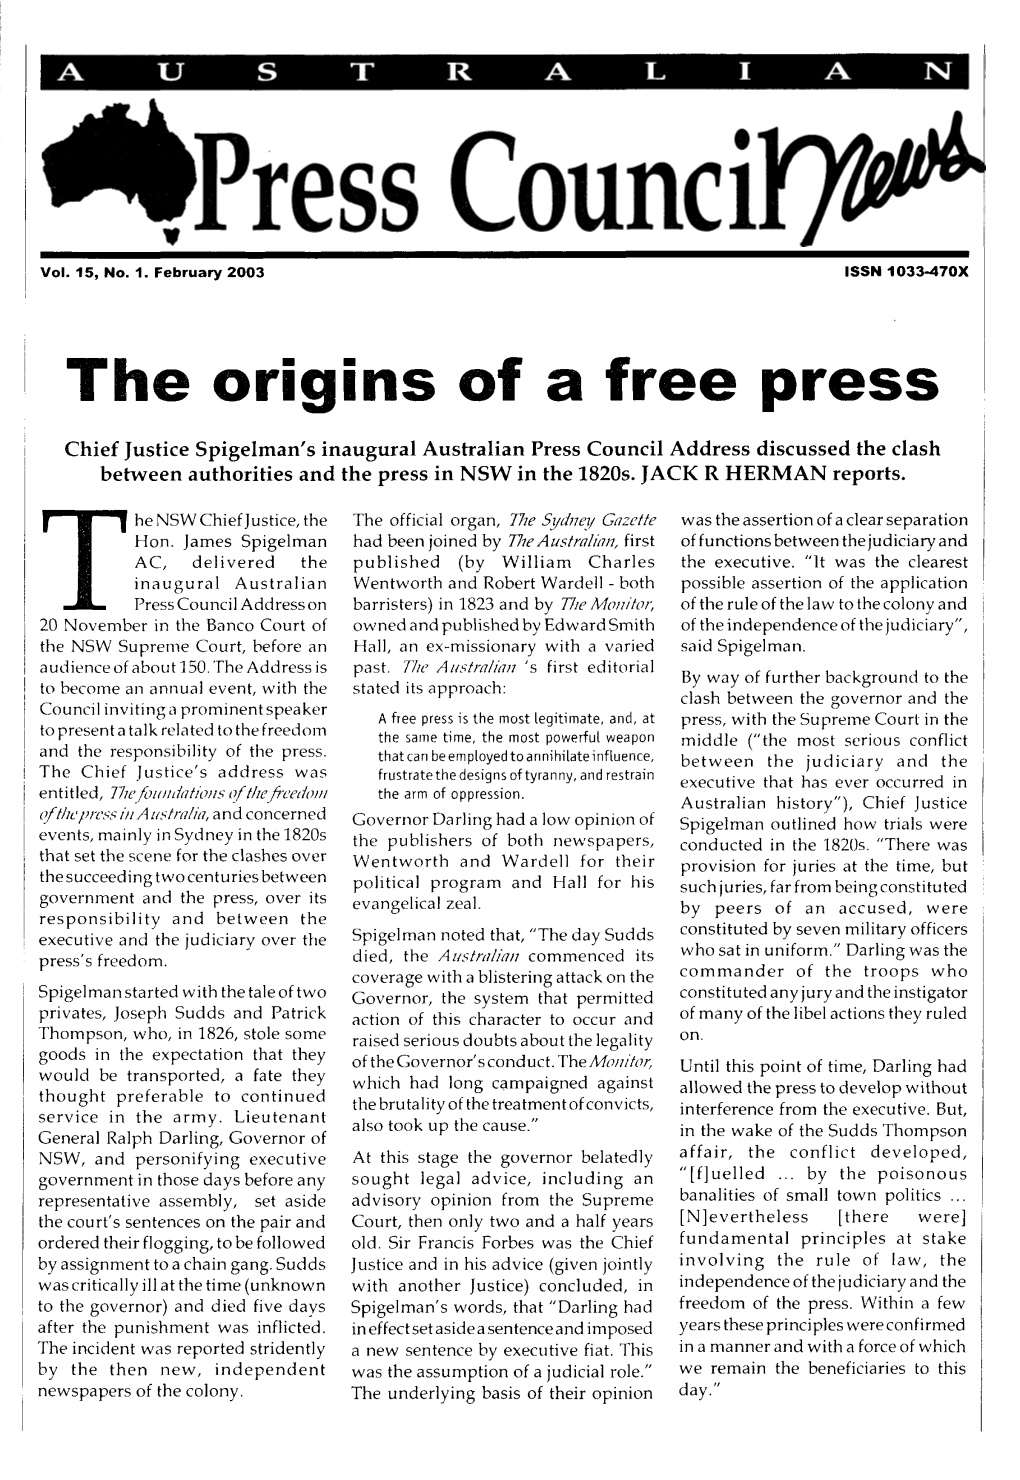 The Origins of a Free Press